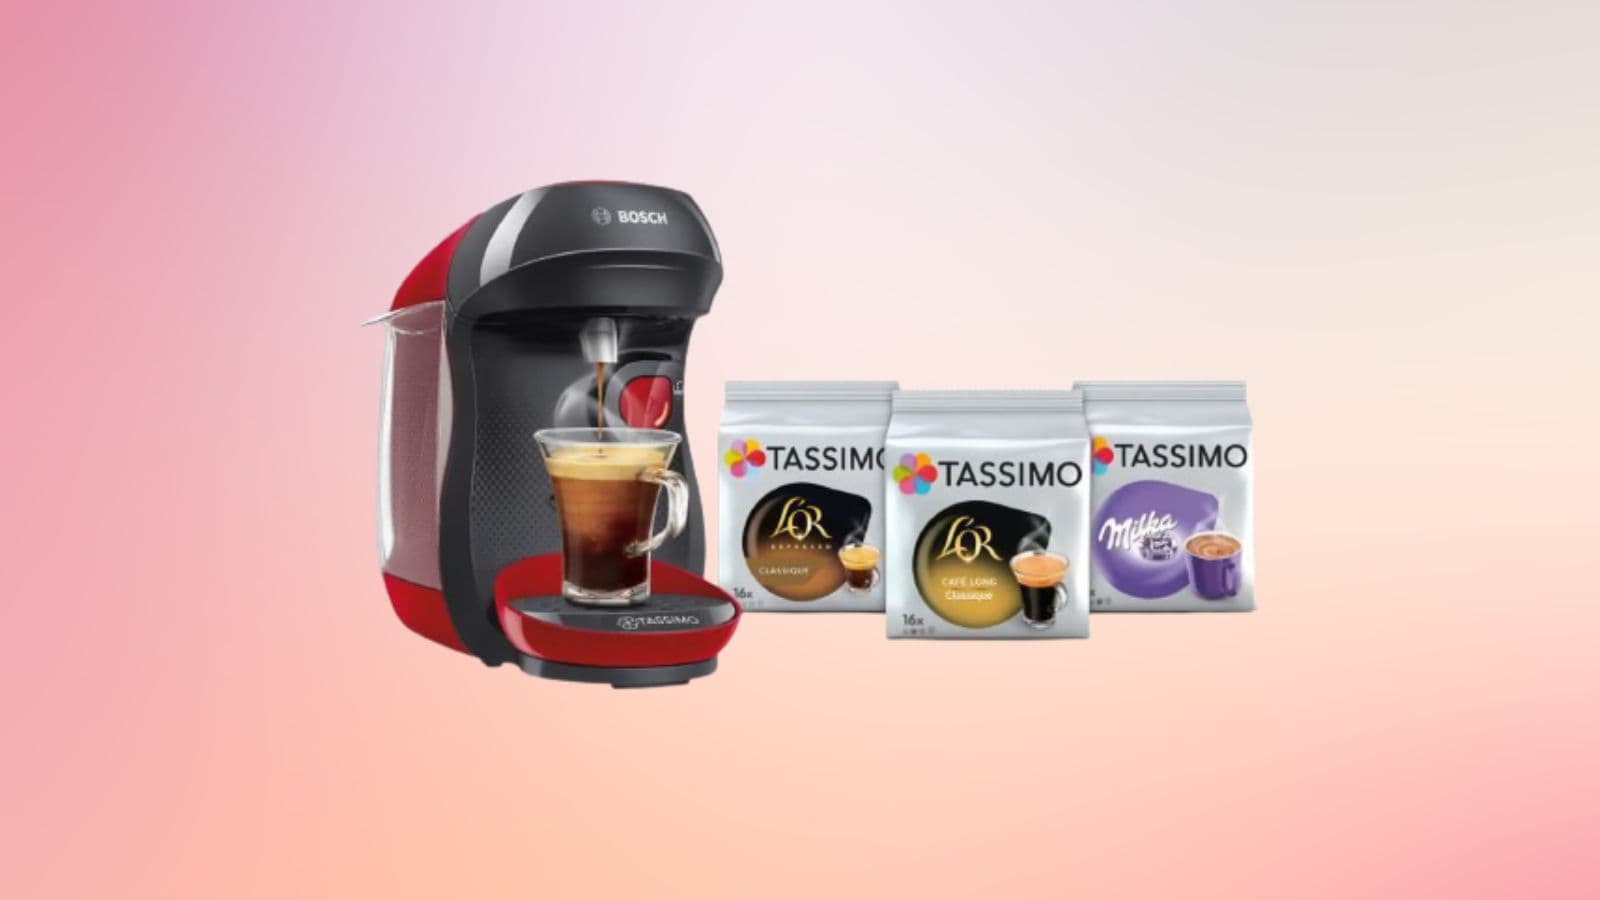 A ce prix là, cette machine à café Tassimo est la pépite du moment